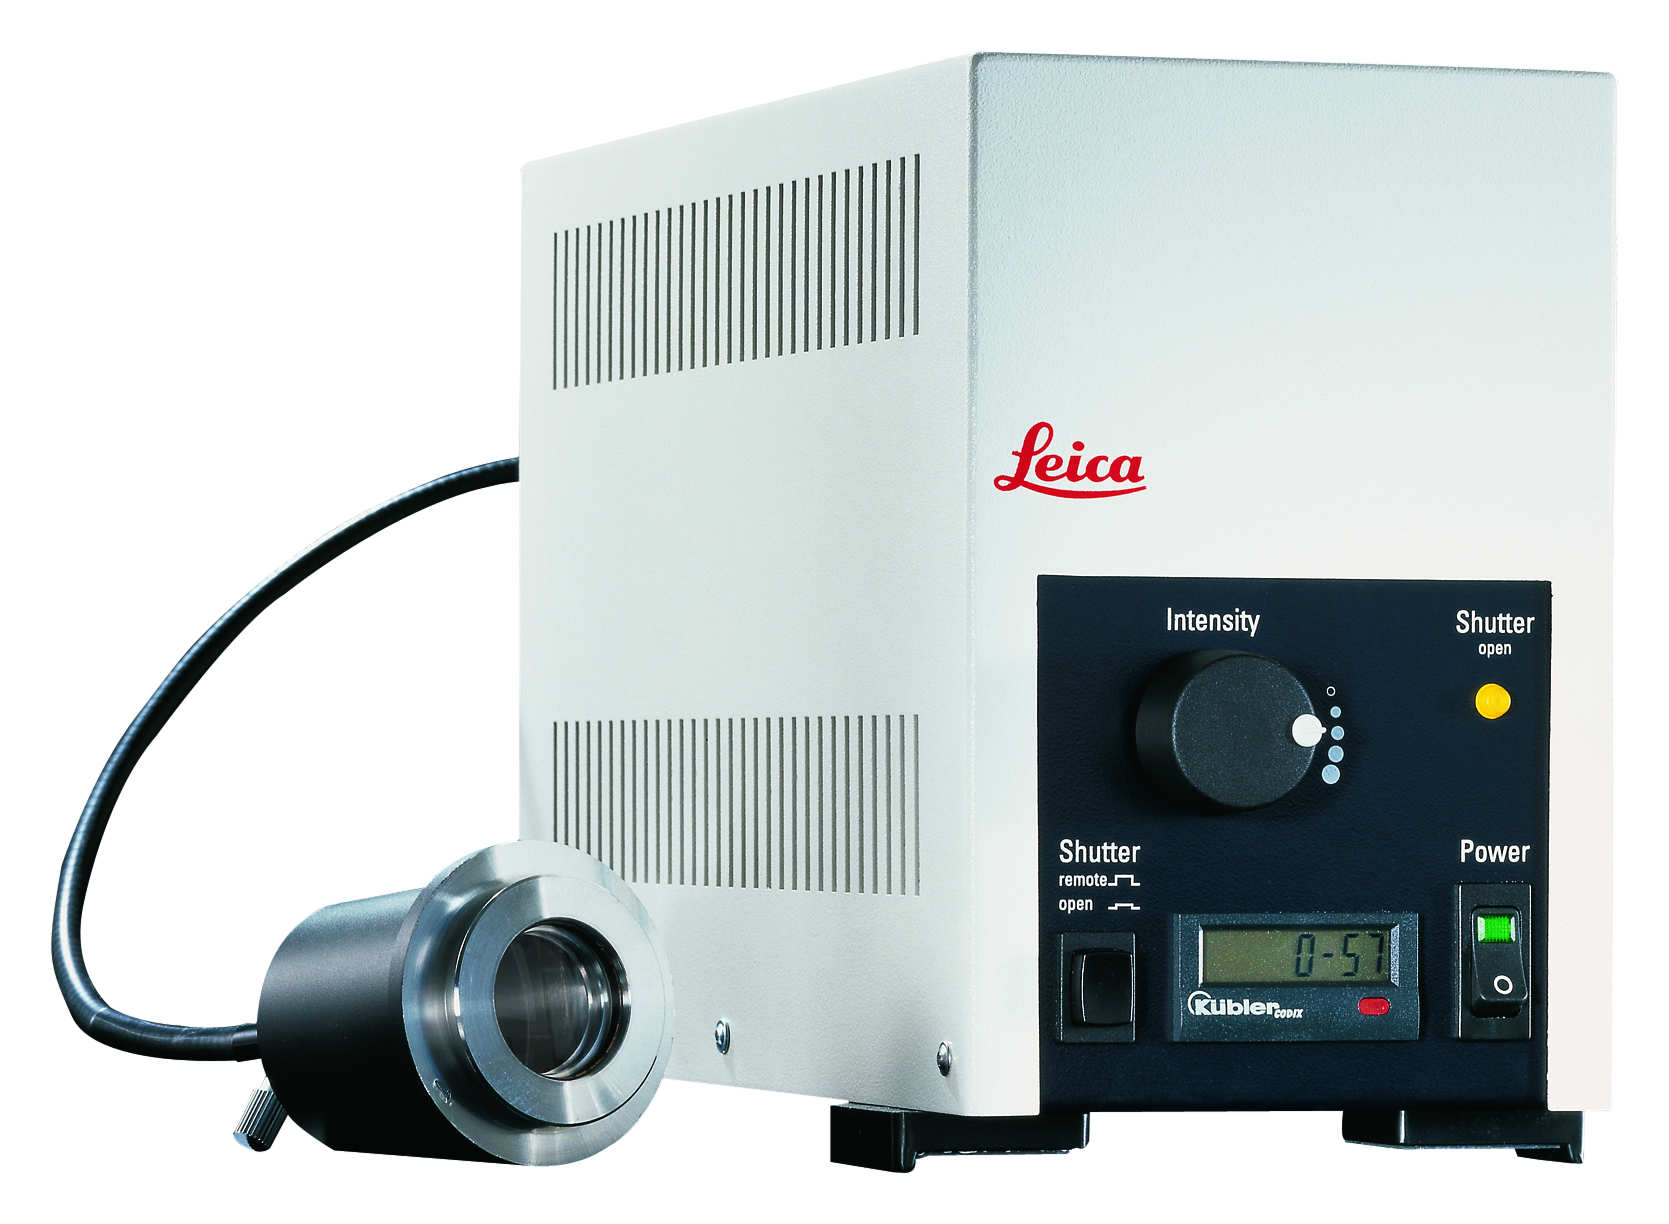 Le Leica EL6000 est un équipement idéal à un prix abordable pour l'imagerie en fluorescence.